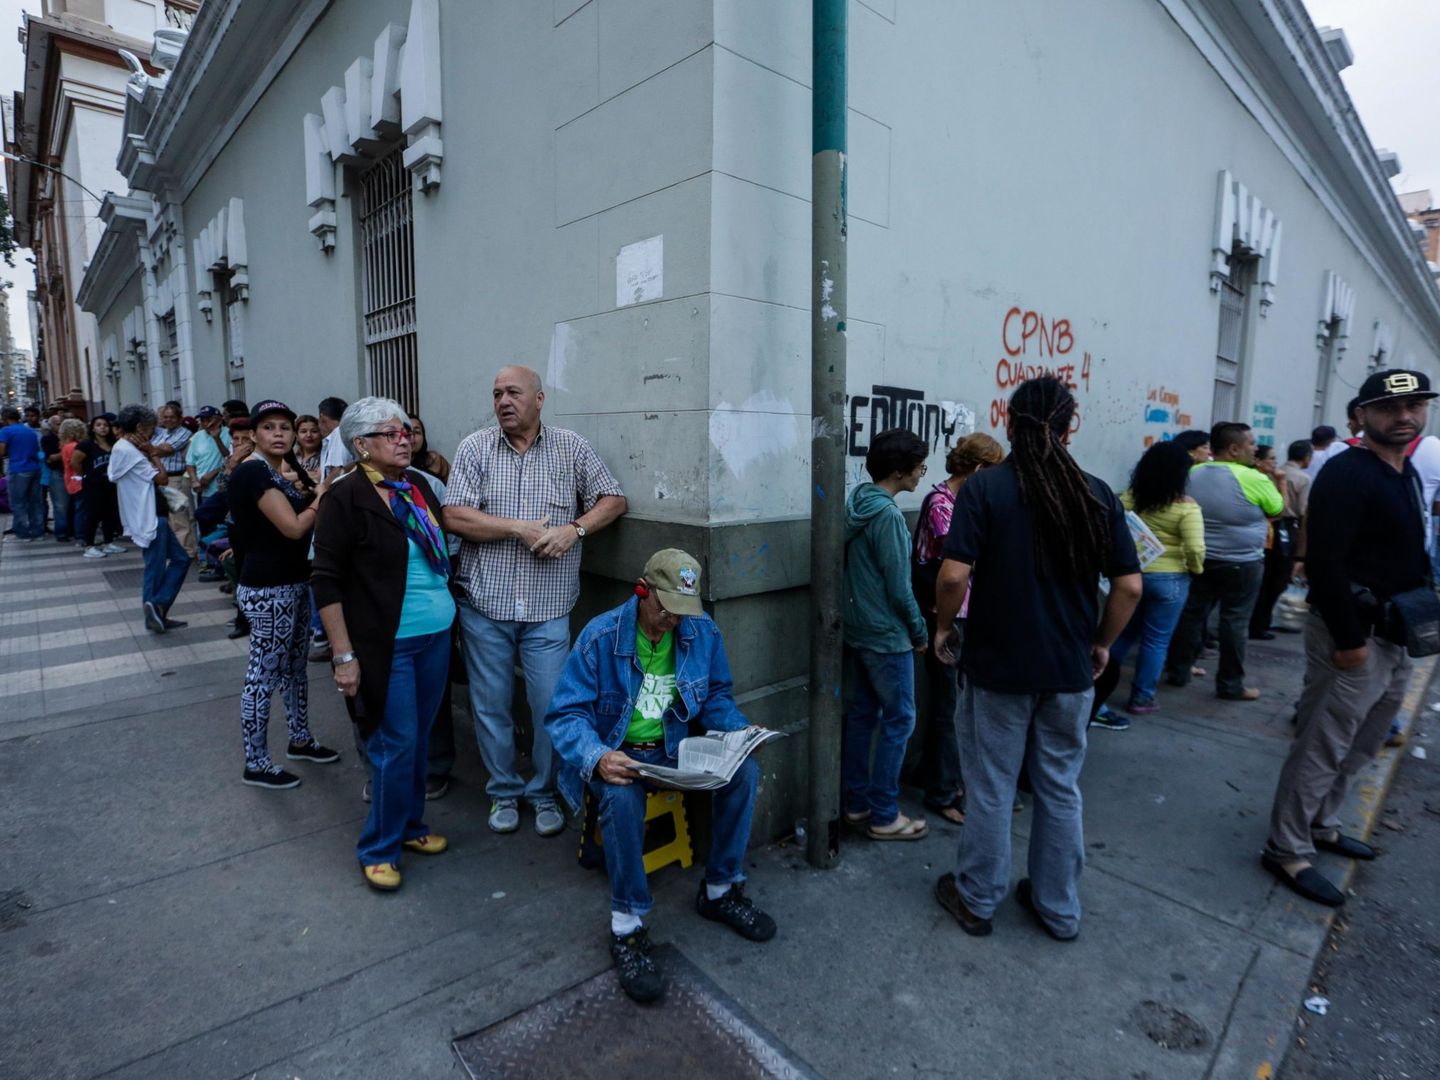 [Pinche aquí para ver la jornada electoral venezolana en imágenes]